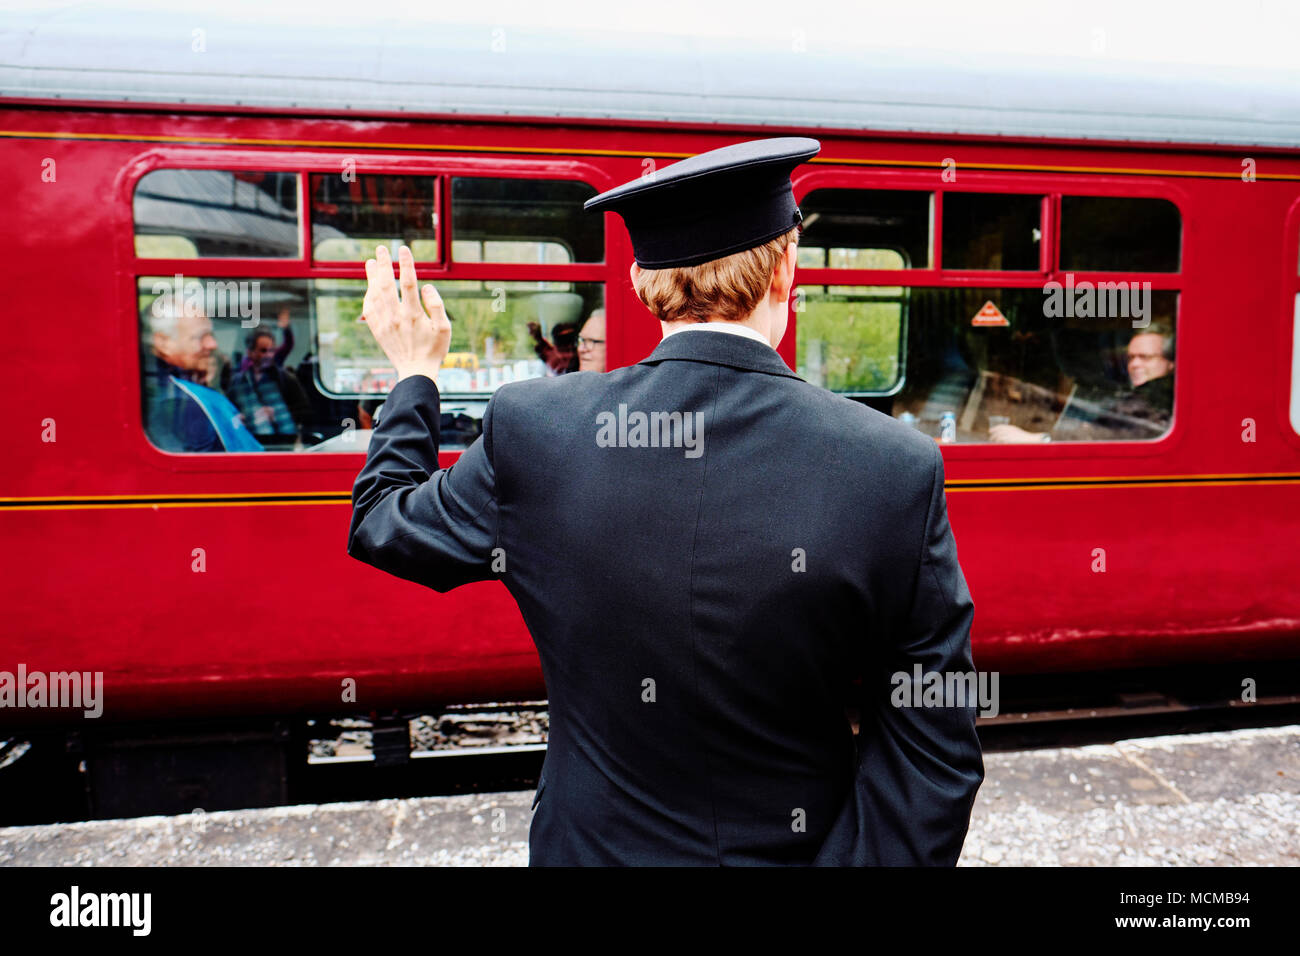 Le gestionnaire de la gare sur une ligne de chemin de fer à vapeur d'époque dit au revoir aux passagers. Banque D'Images